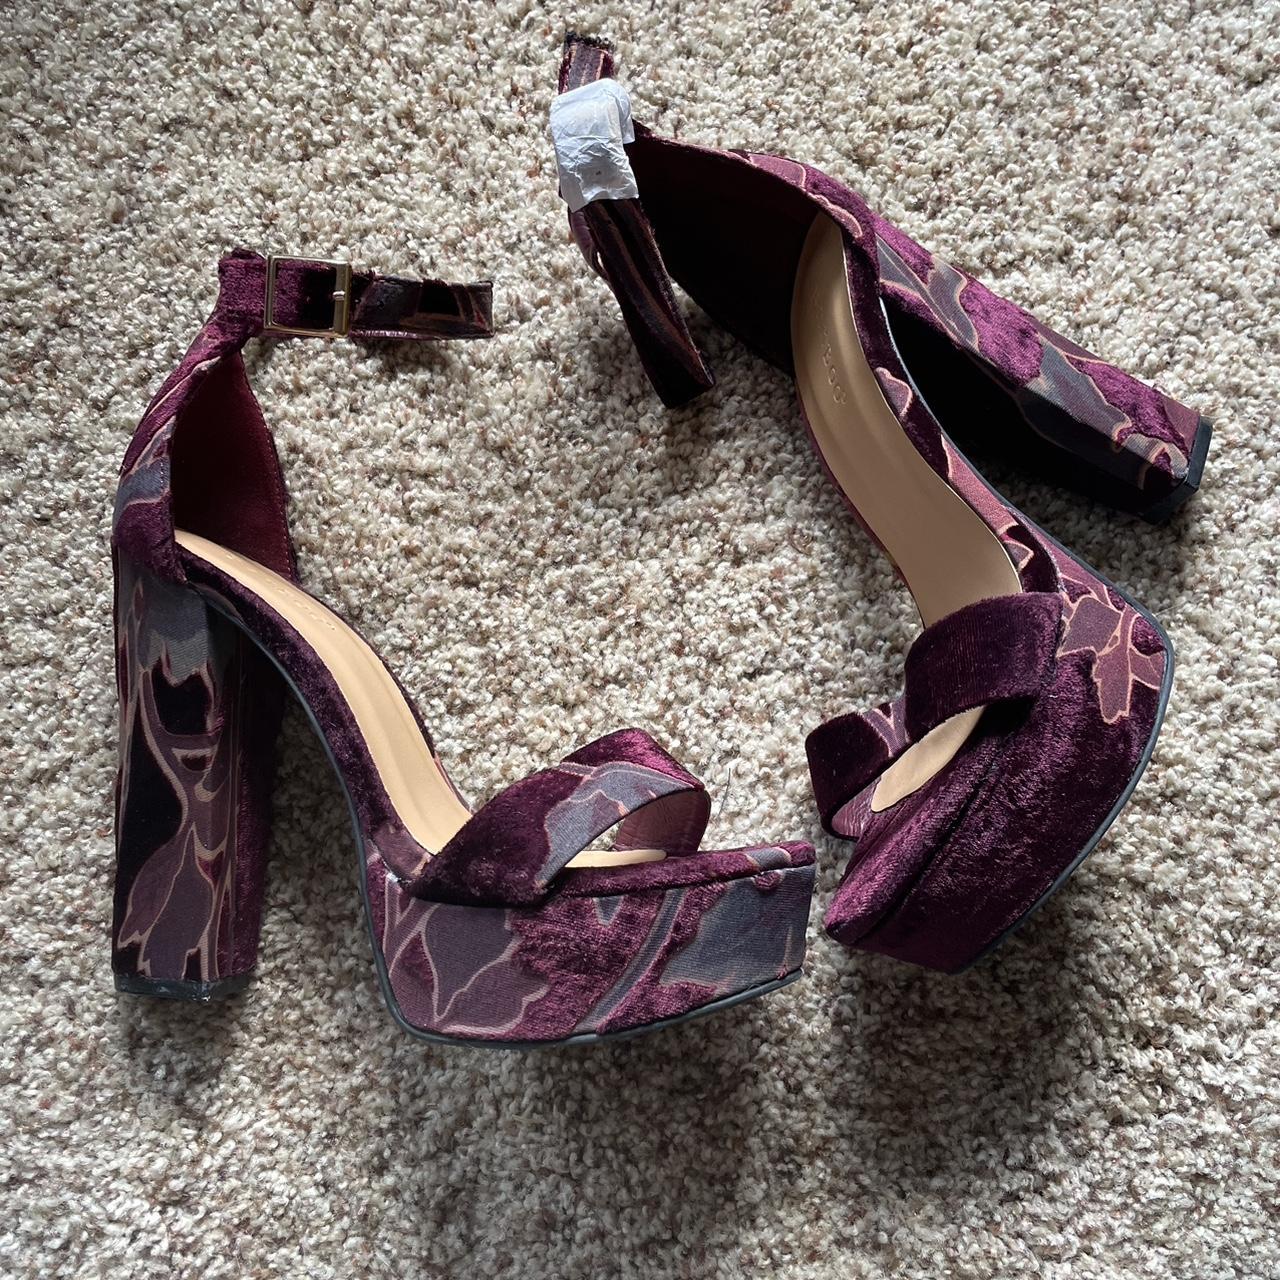 Only 2 pairs left!!! Cute burgundy Velvet ankle... - Depop